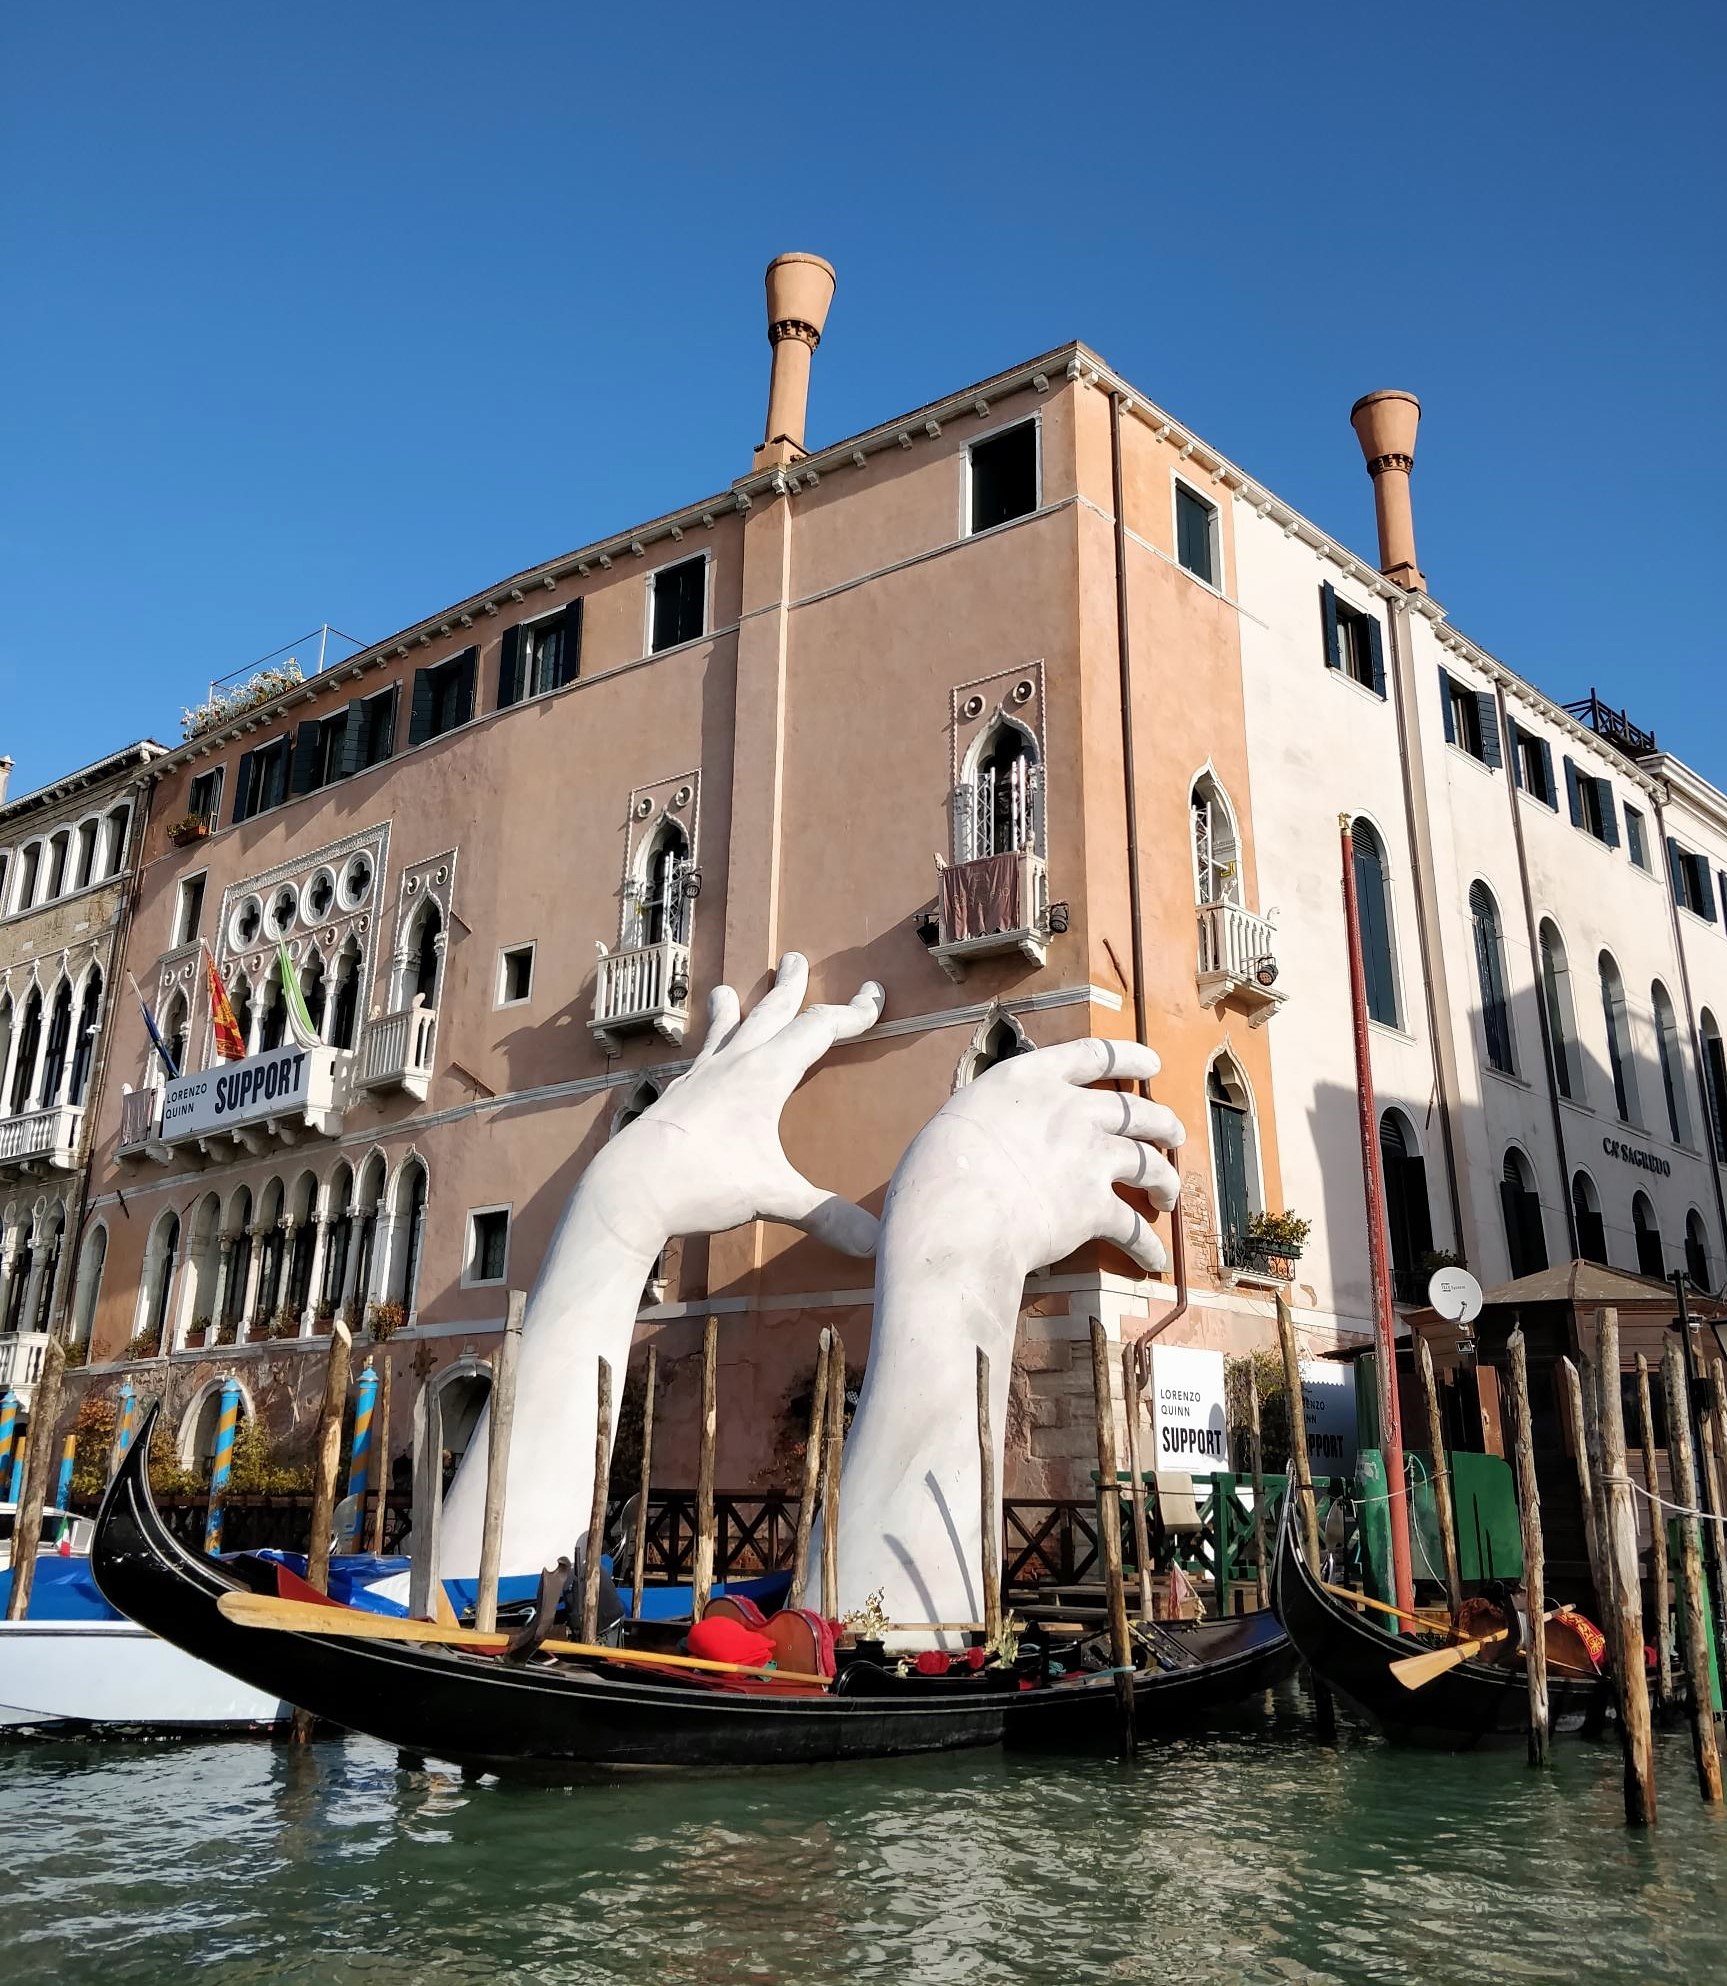 Top 3 Restaurants in Venice